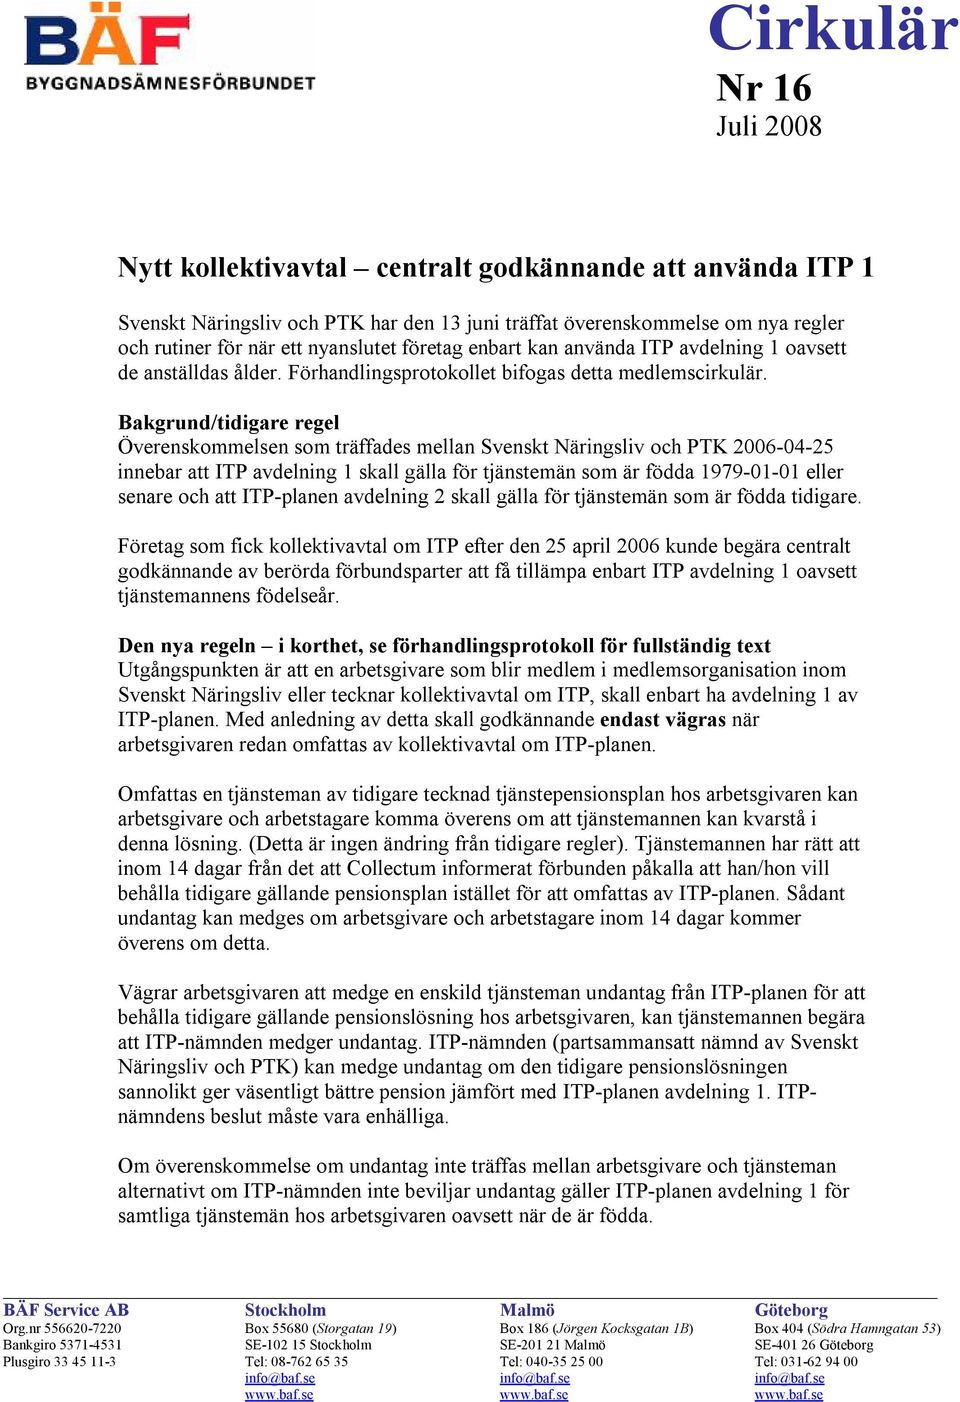 Bakgrund/tidigare regel Överenskommelsen som träffades mellan Svenskt Näringsliv och PTK 2006-04-25 innebar att ITP avdelning 1 skall gälla för tjänstemän som är födda 1979-01-01 eller senare och att